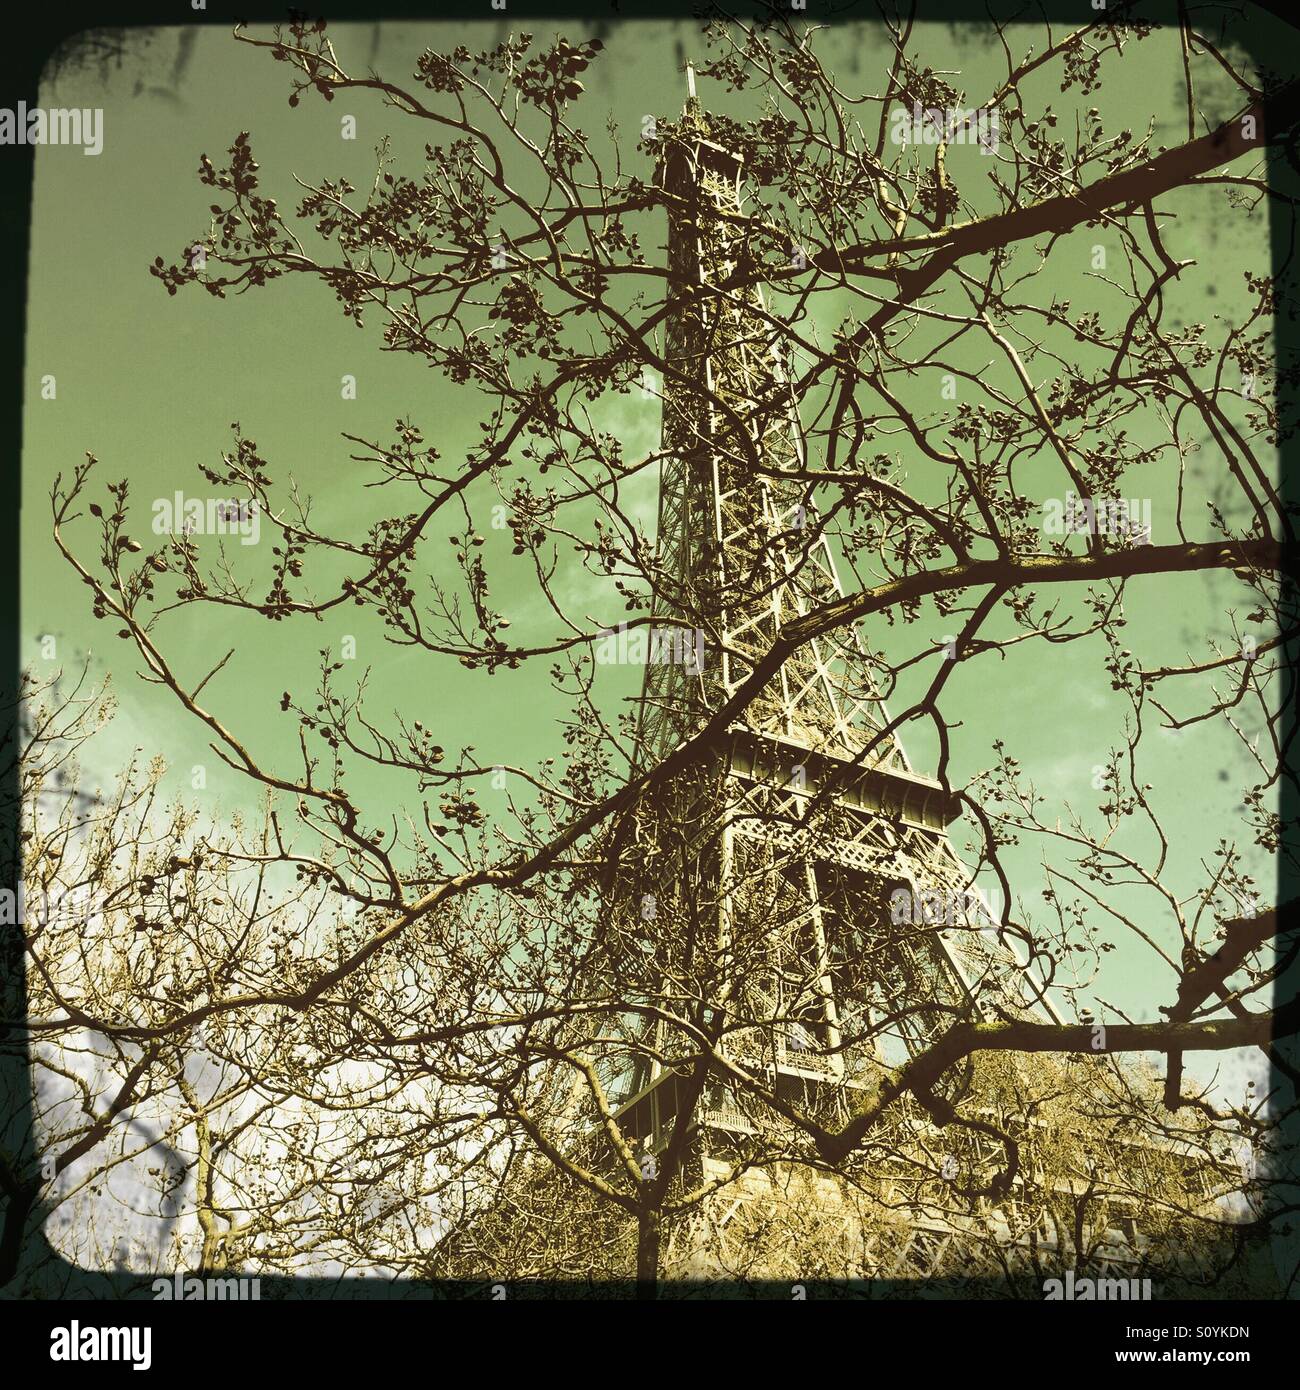 La Torre Eiffel a Parigi, Francia. Foto Stock